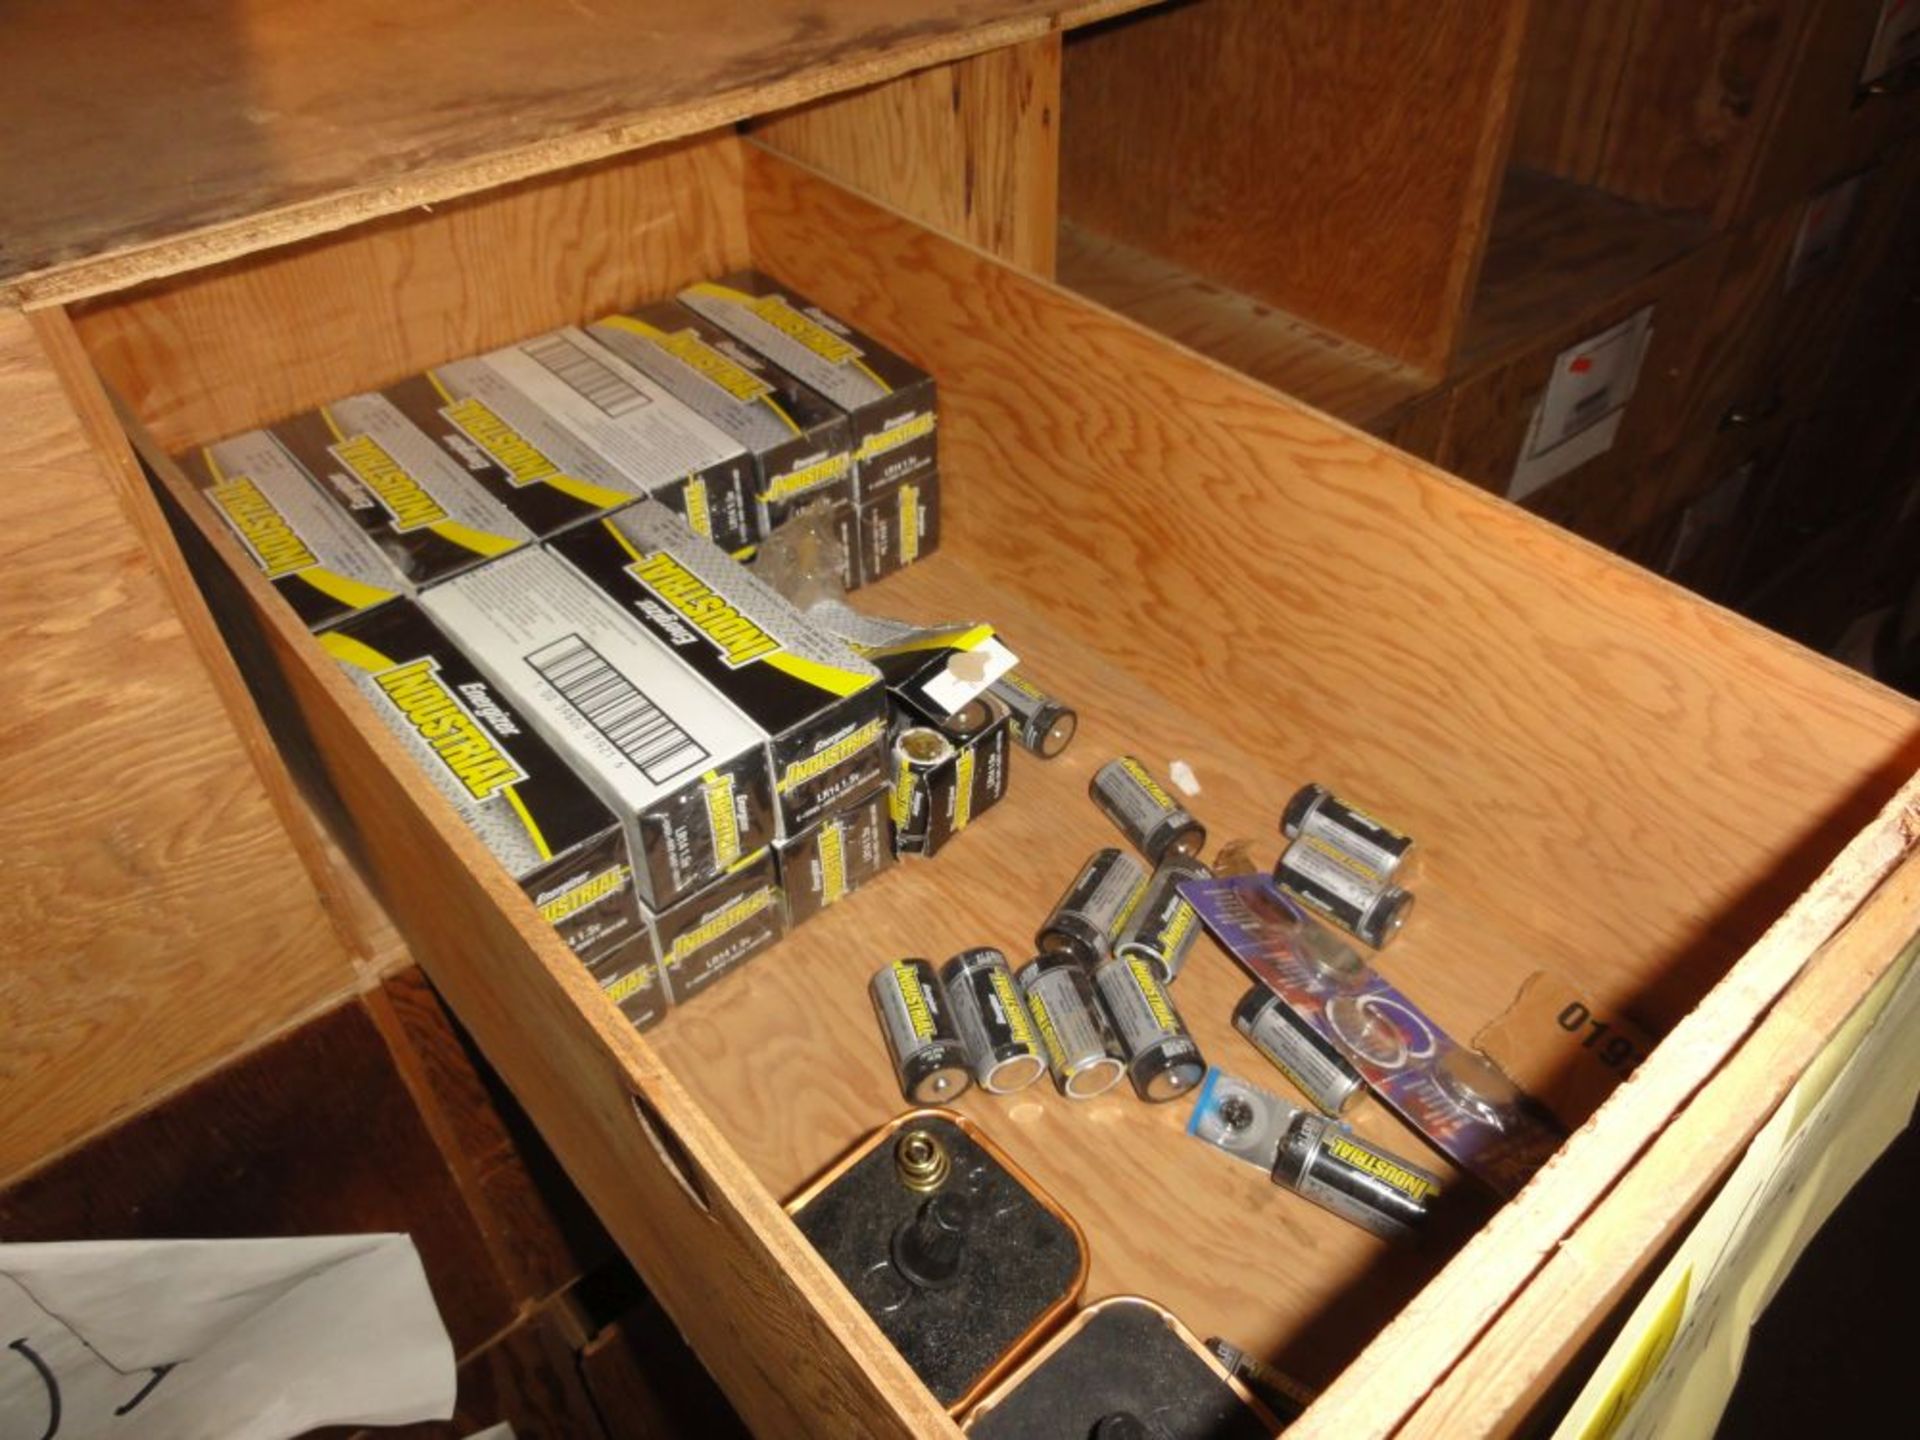 Packs of NEW "C" Batteries